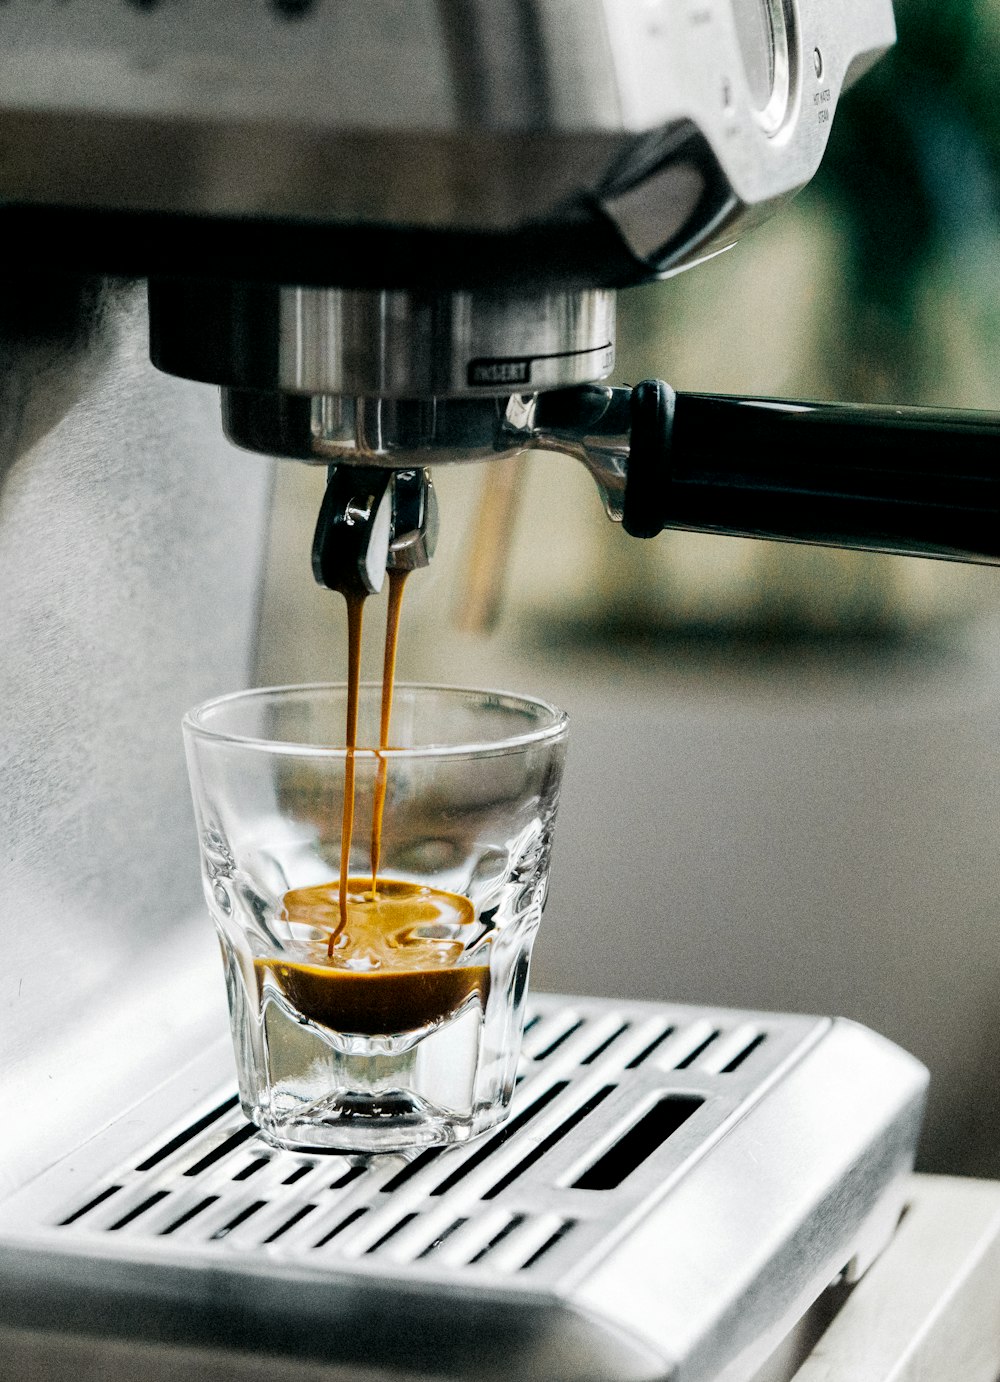 Espresso brewing into a shot glass